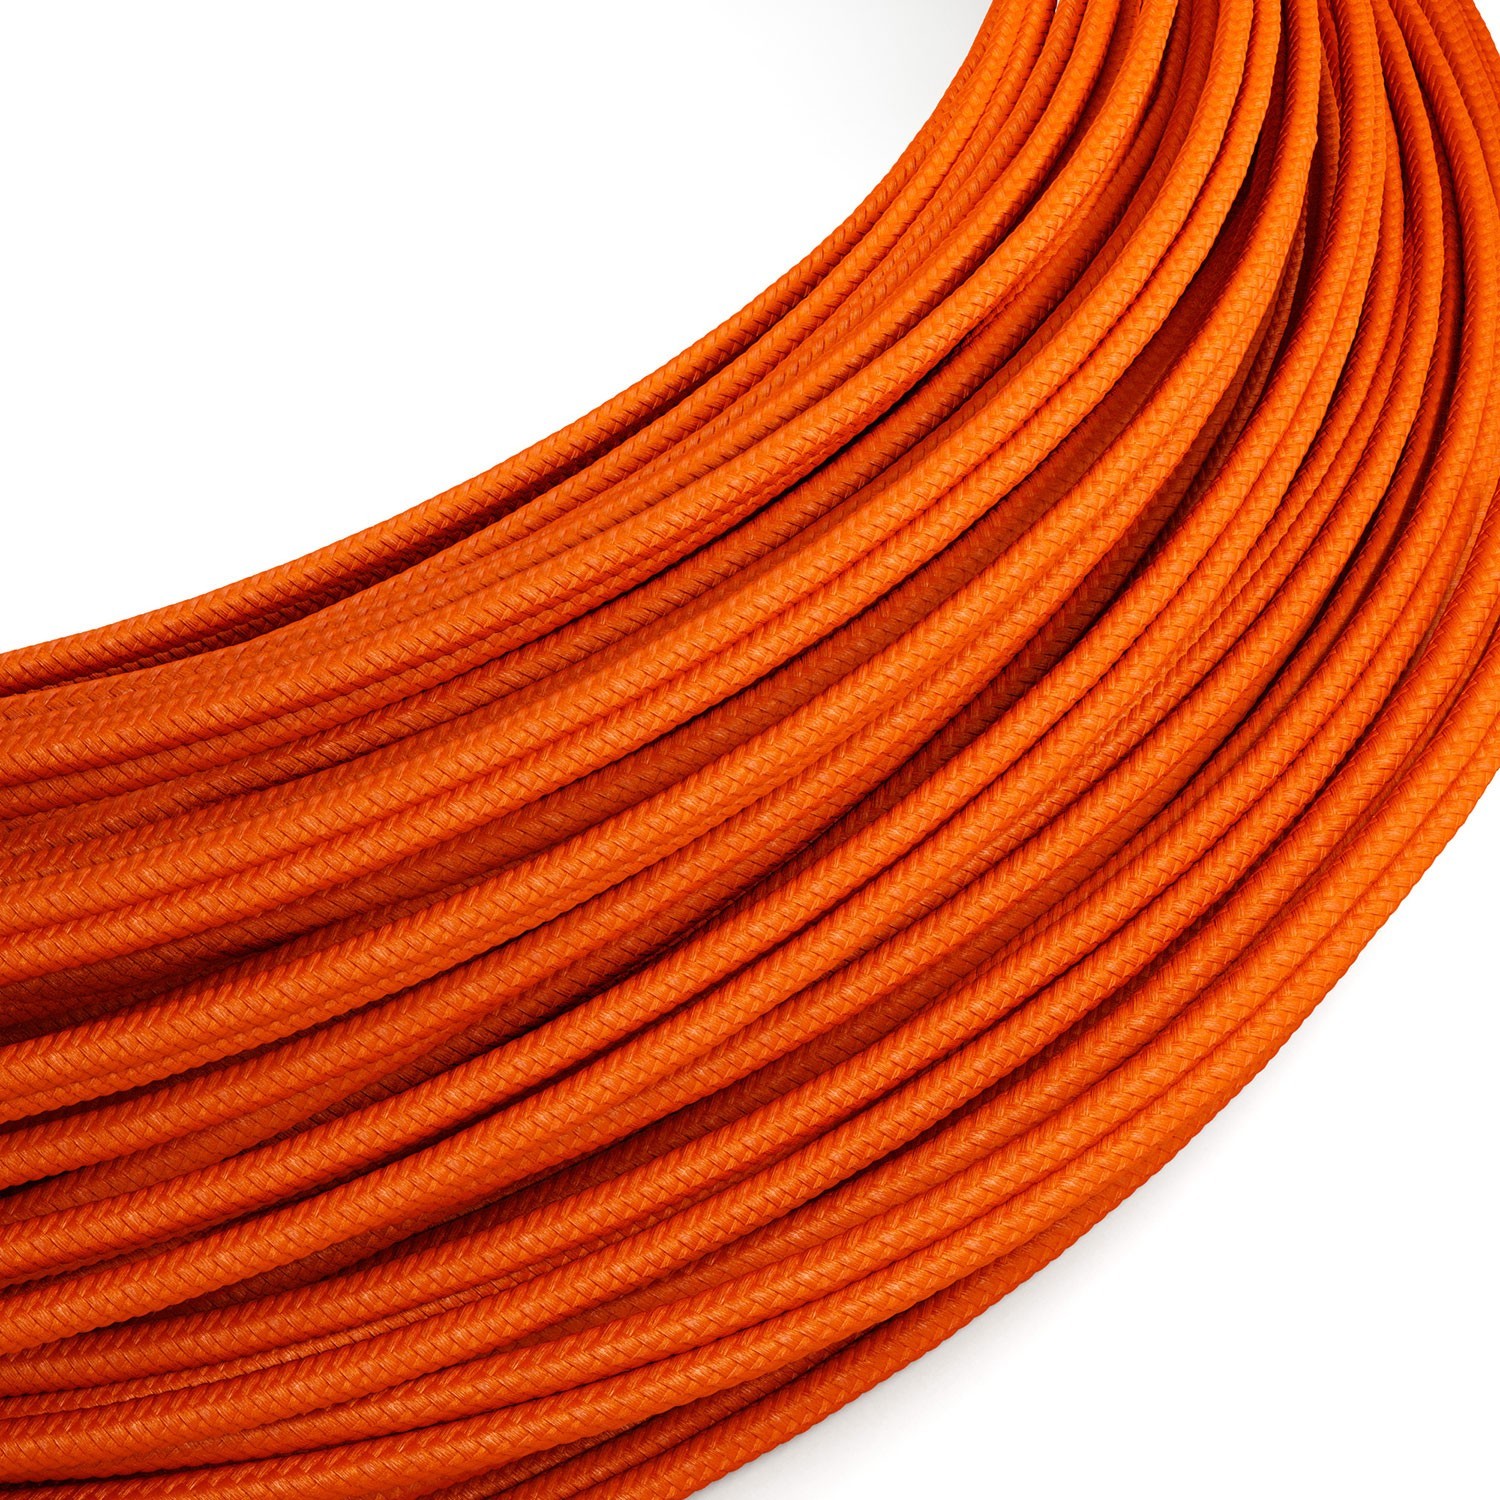 Cable de alimentación Extra Low Voltage revestido de tejido efecto seda Naranja RM15 - 50 m